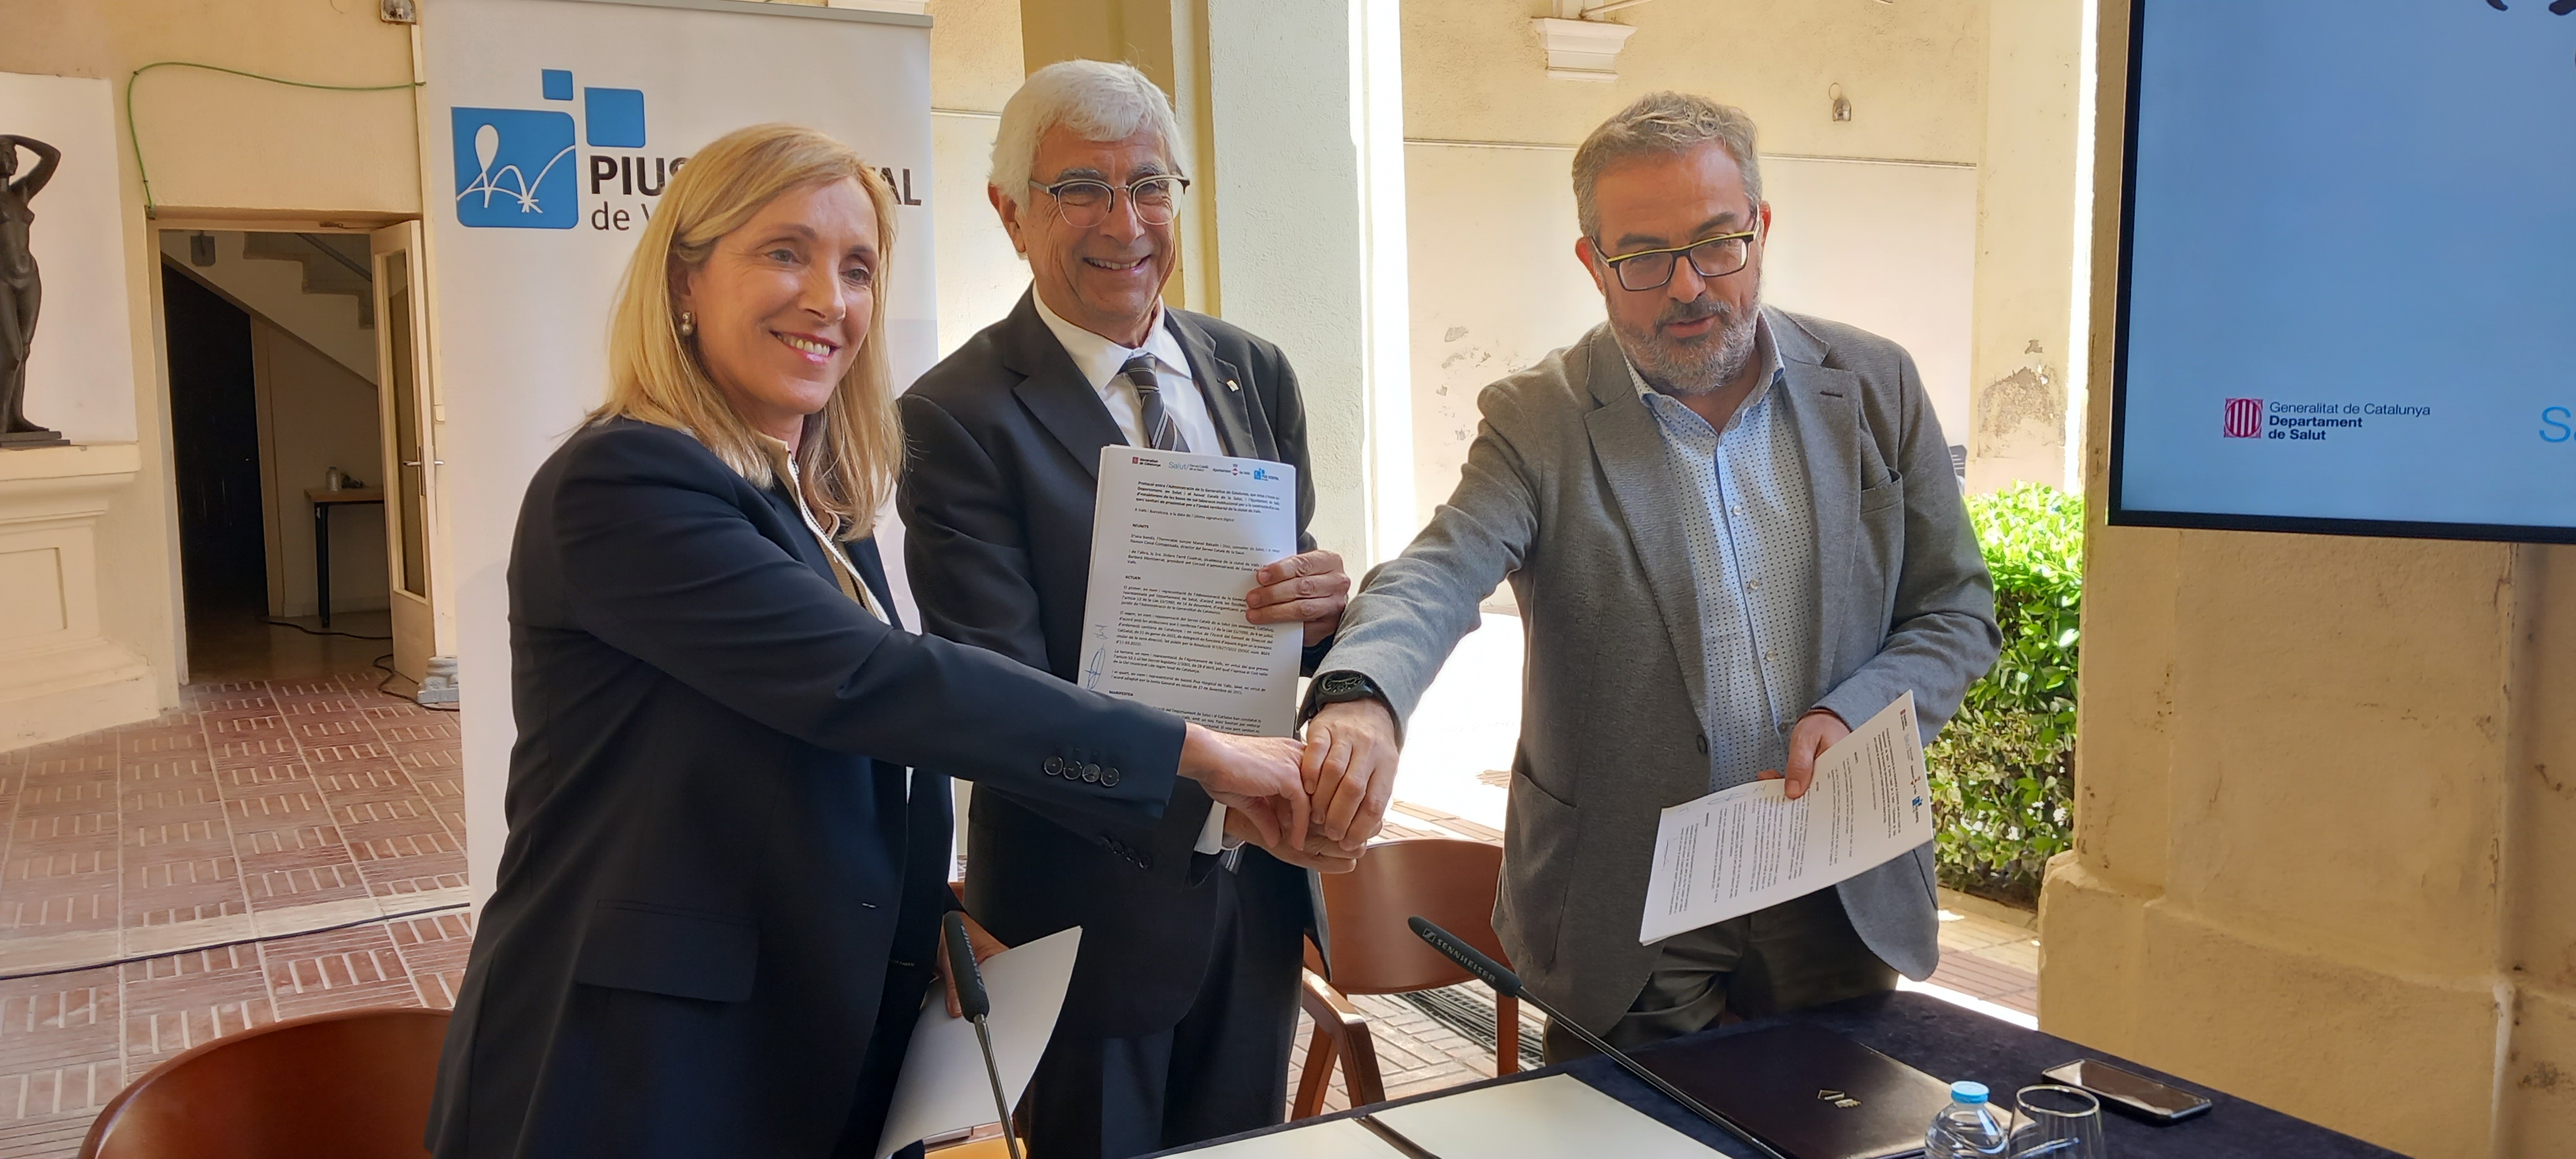 Govern i Valls signen el conveni per a la construcció d’un parc sanitari